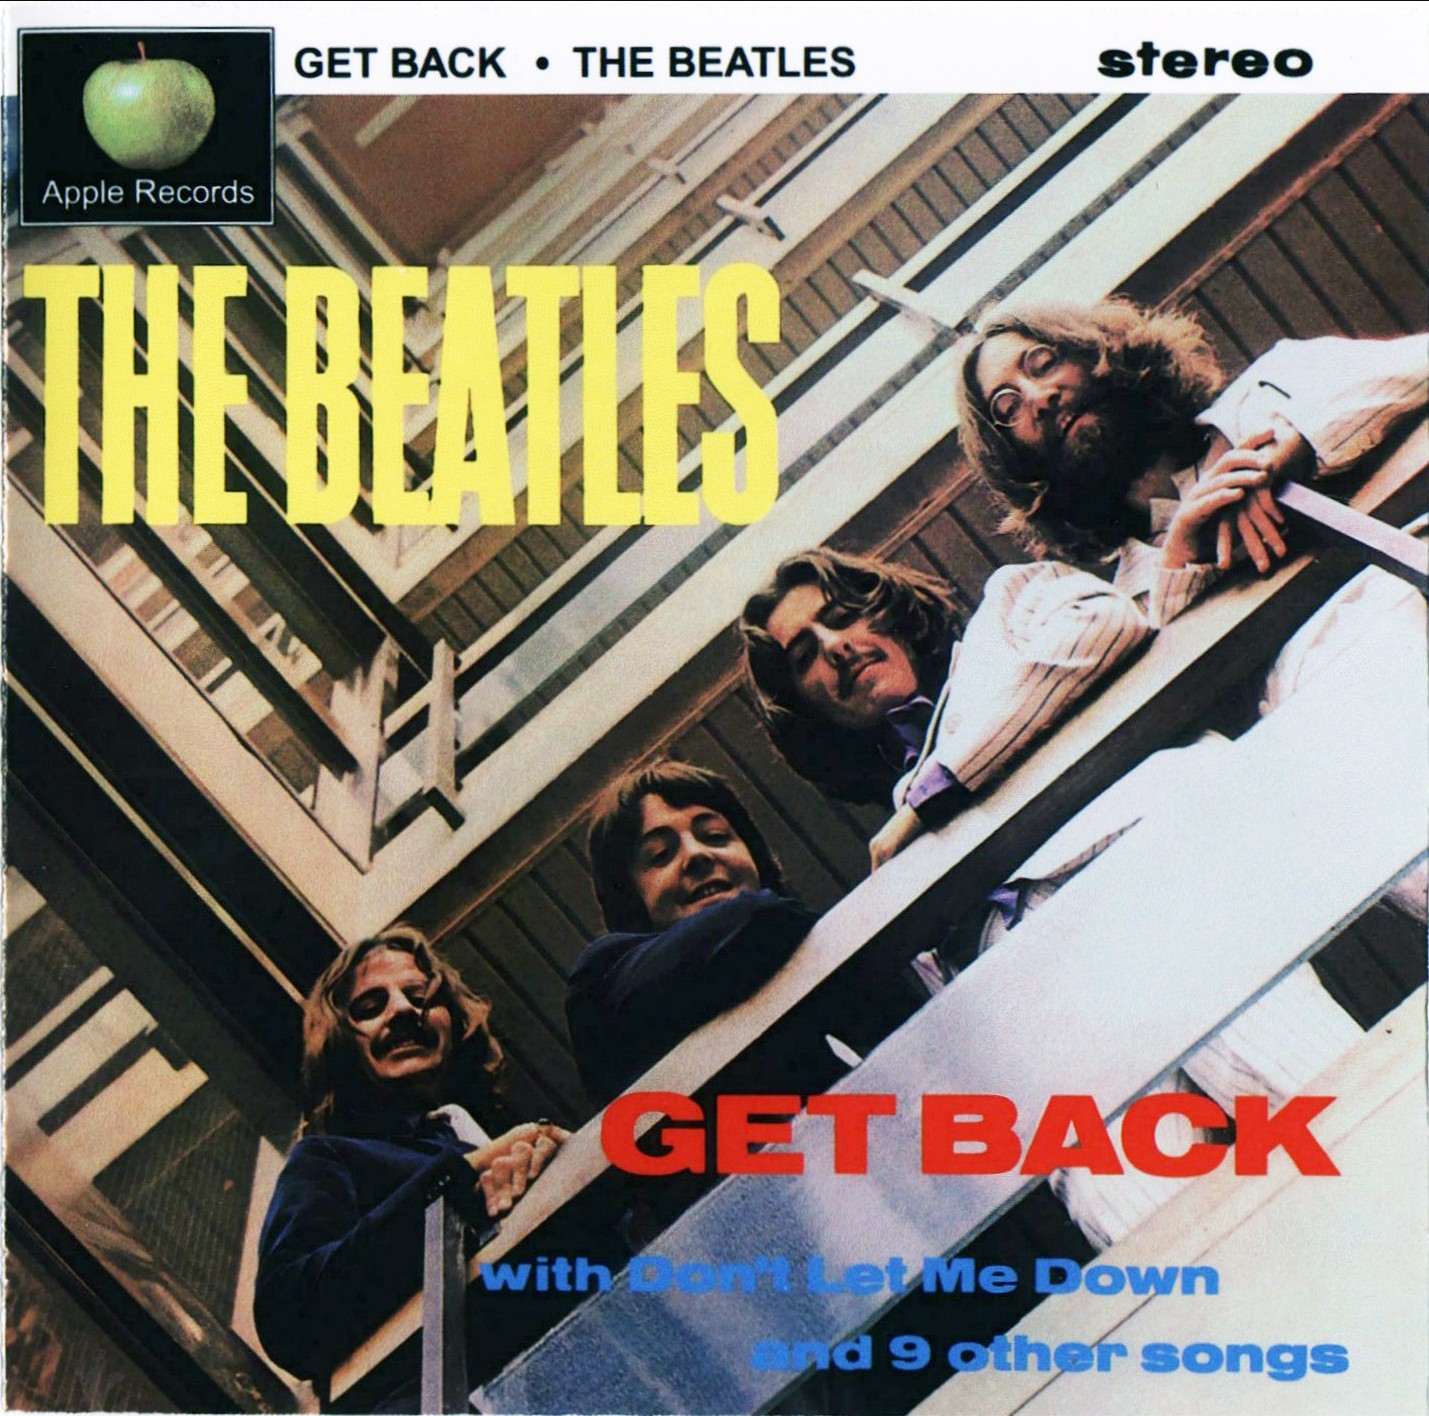 Beatles, Beatles, Beatles - Página 10 BeatlesGetBack1stDrEbbets_cov